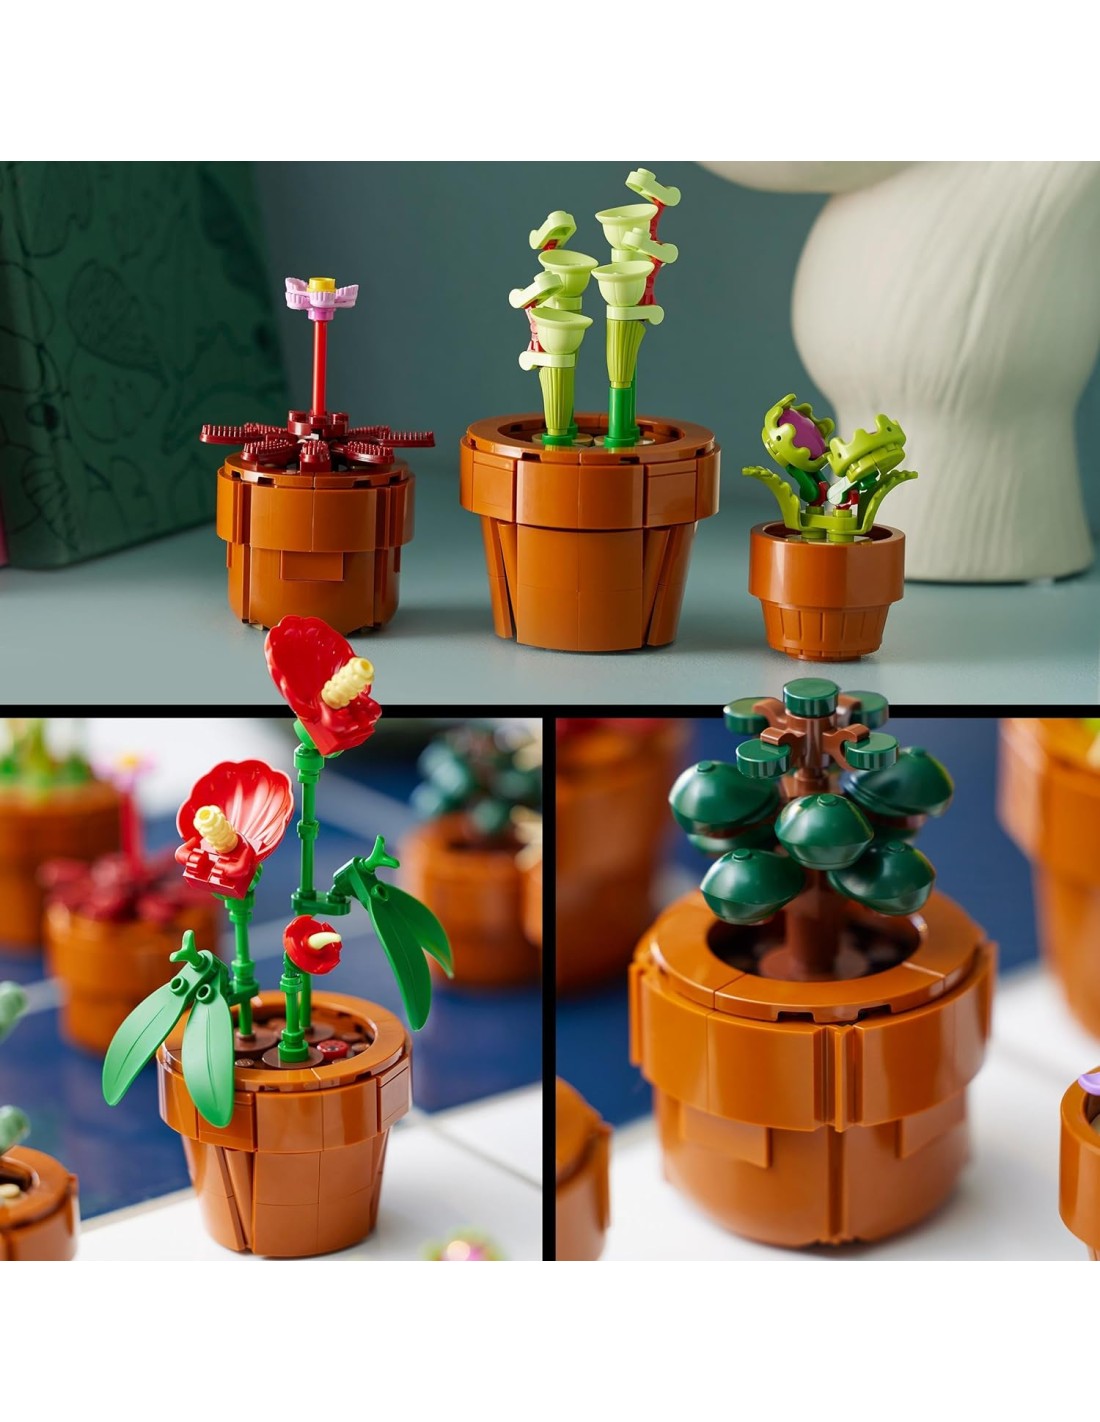 Lego Botanical Icons Piantine